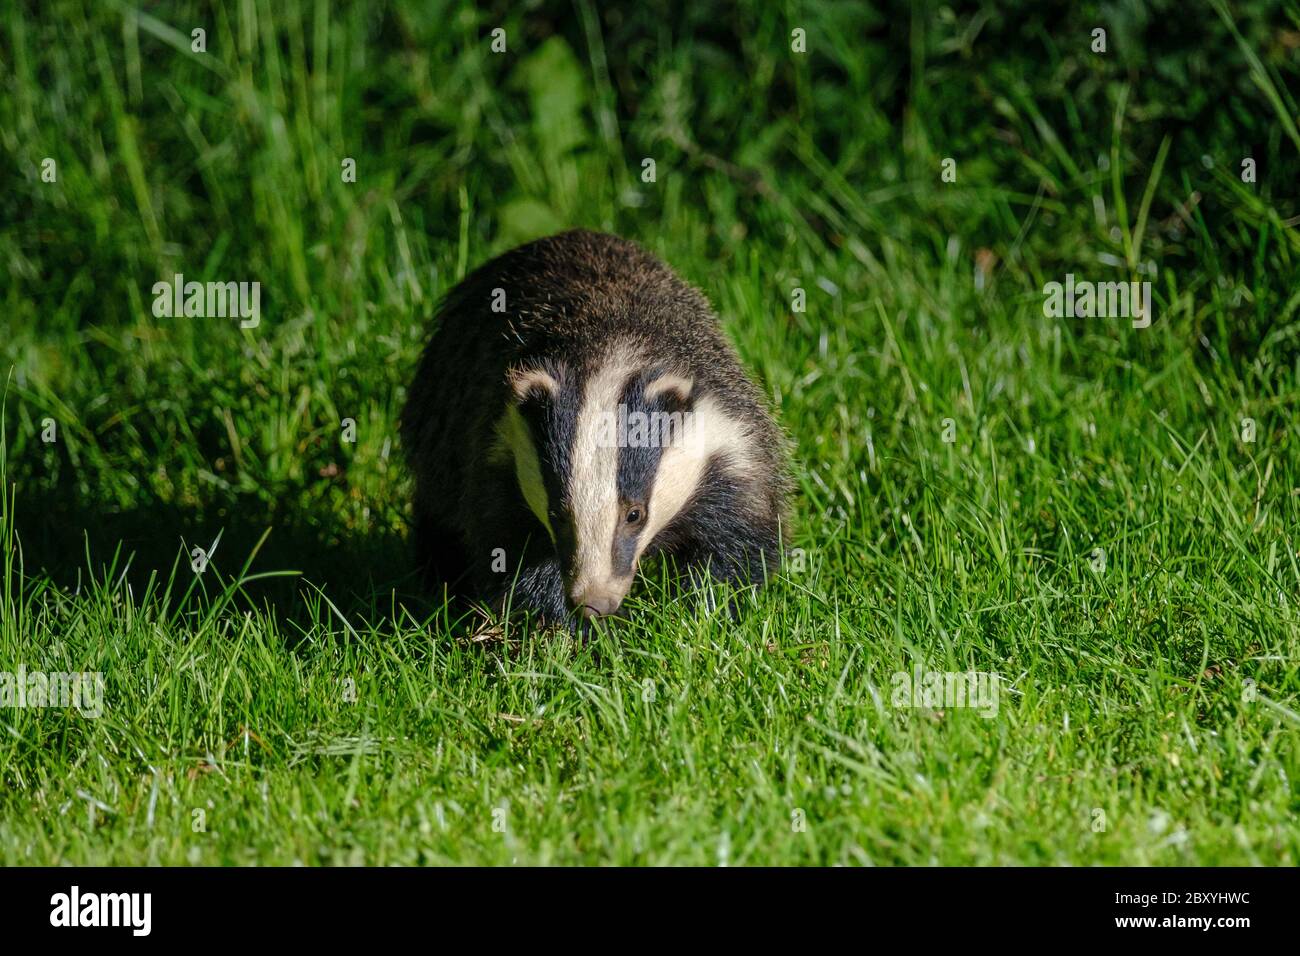 A Badger in a field near Oakley wood, Wawickshire, UK Stock Photo